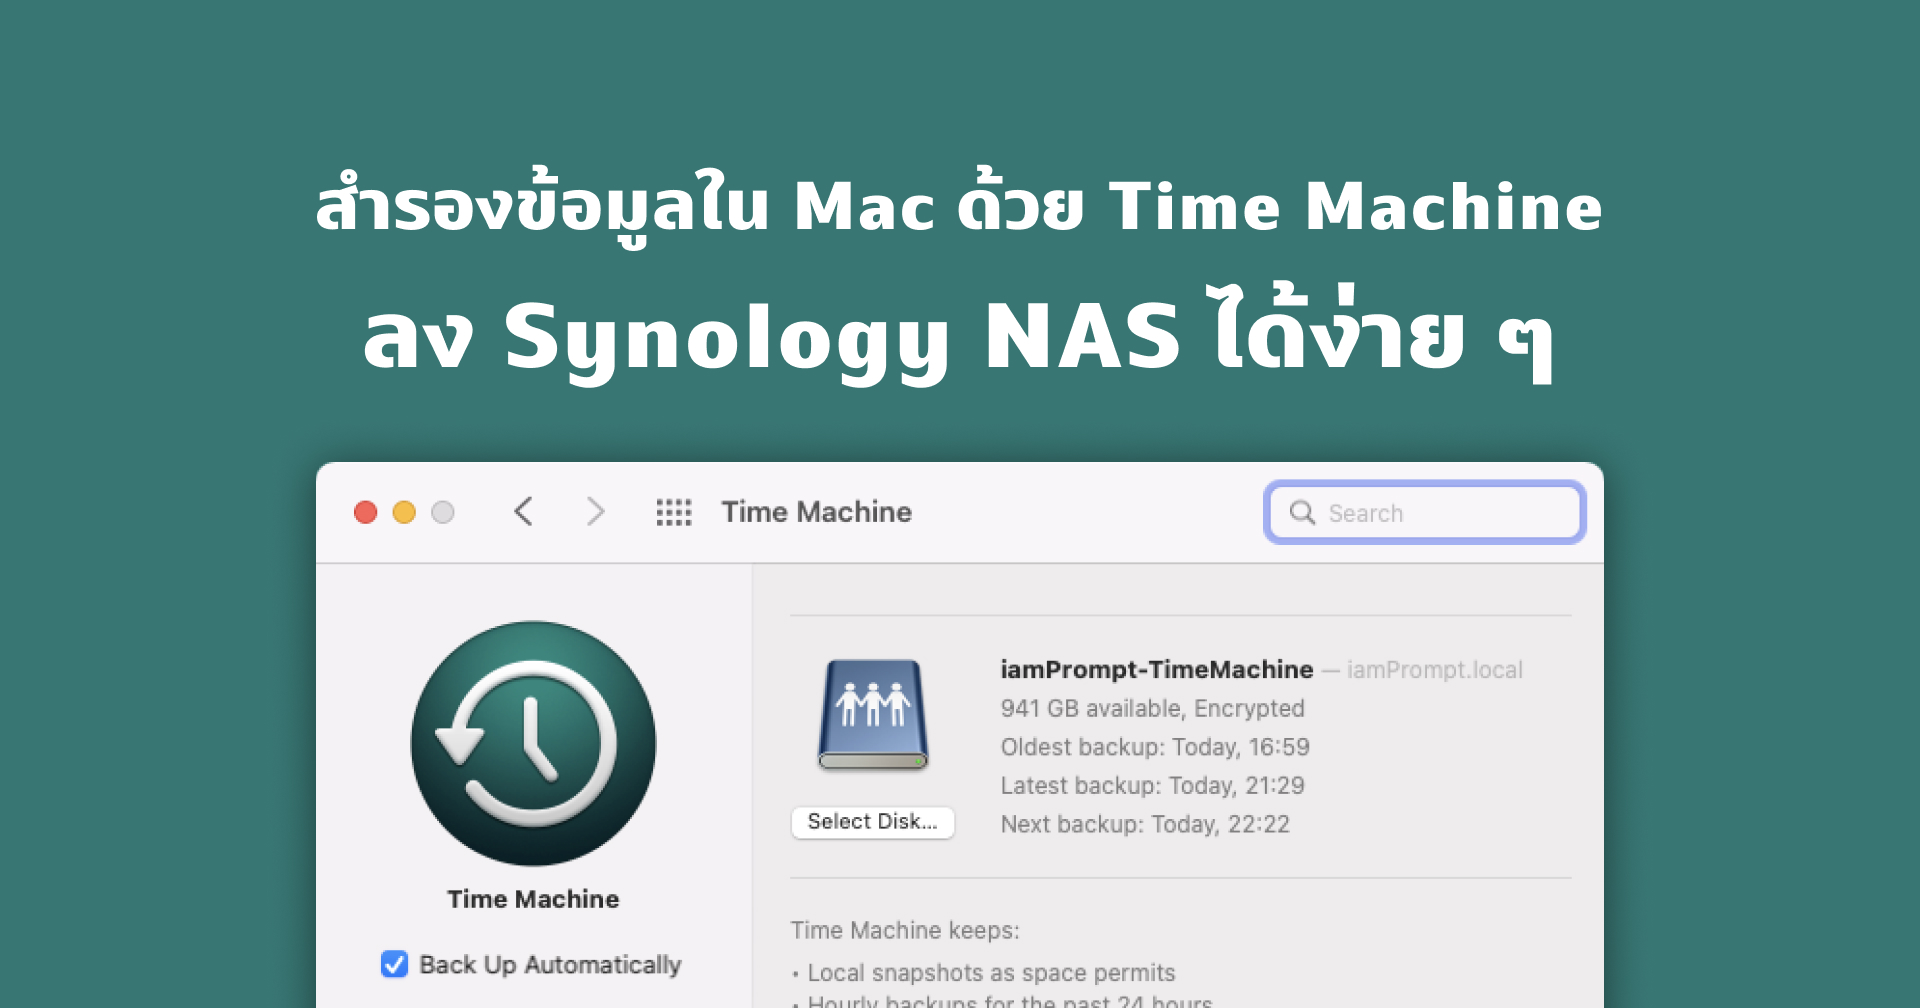 วิธีสำรองข้อมูล Time Machine จาก Mac ด้วย Synology NAS ง่าย ๆ เพียงไม่กี่ขั้นตอน